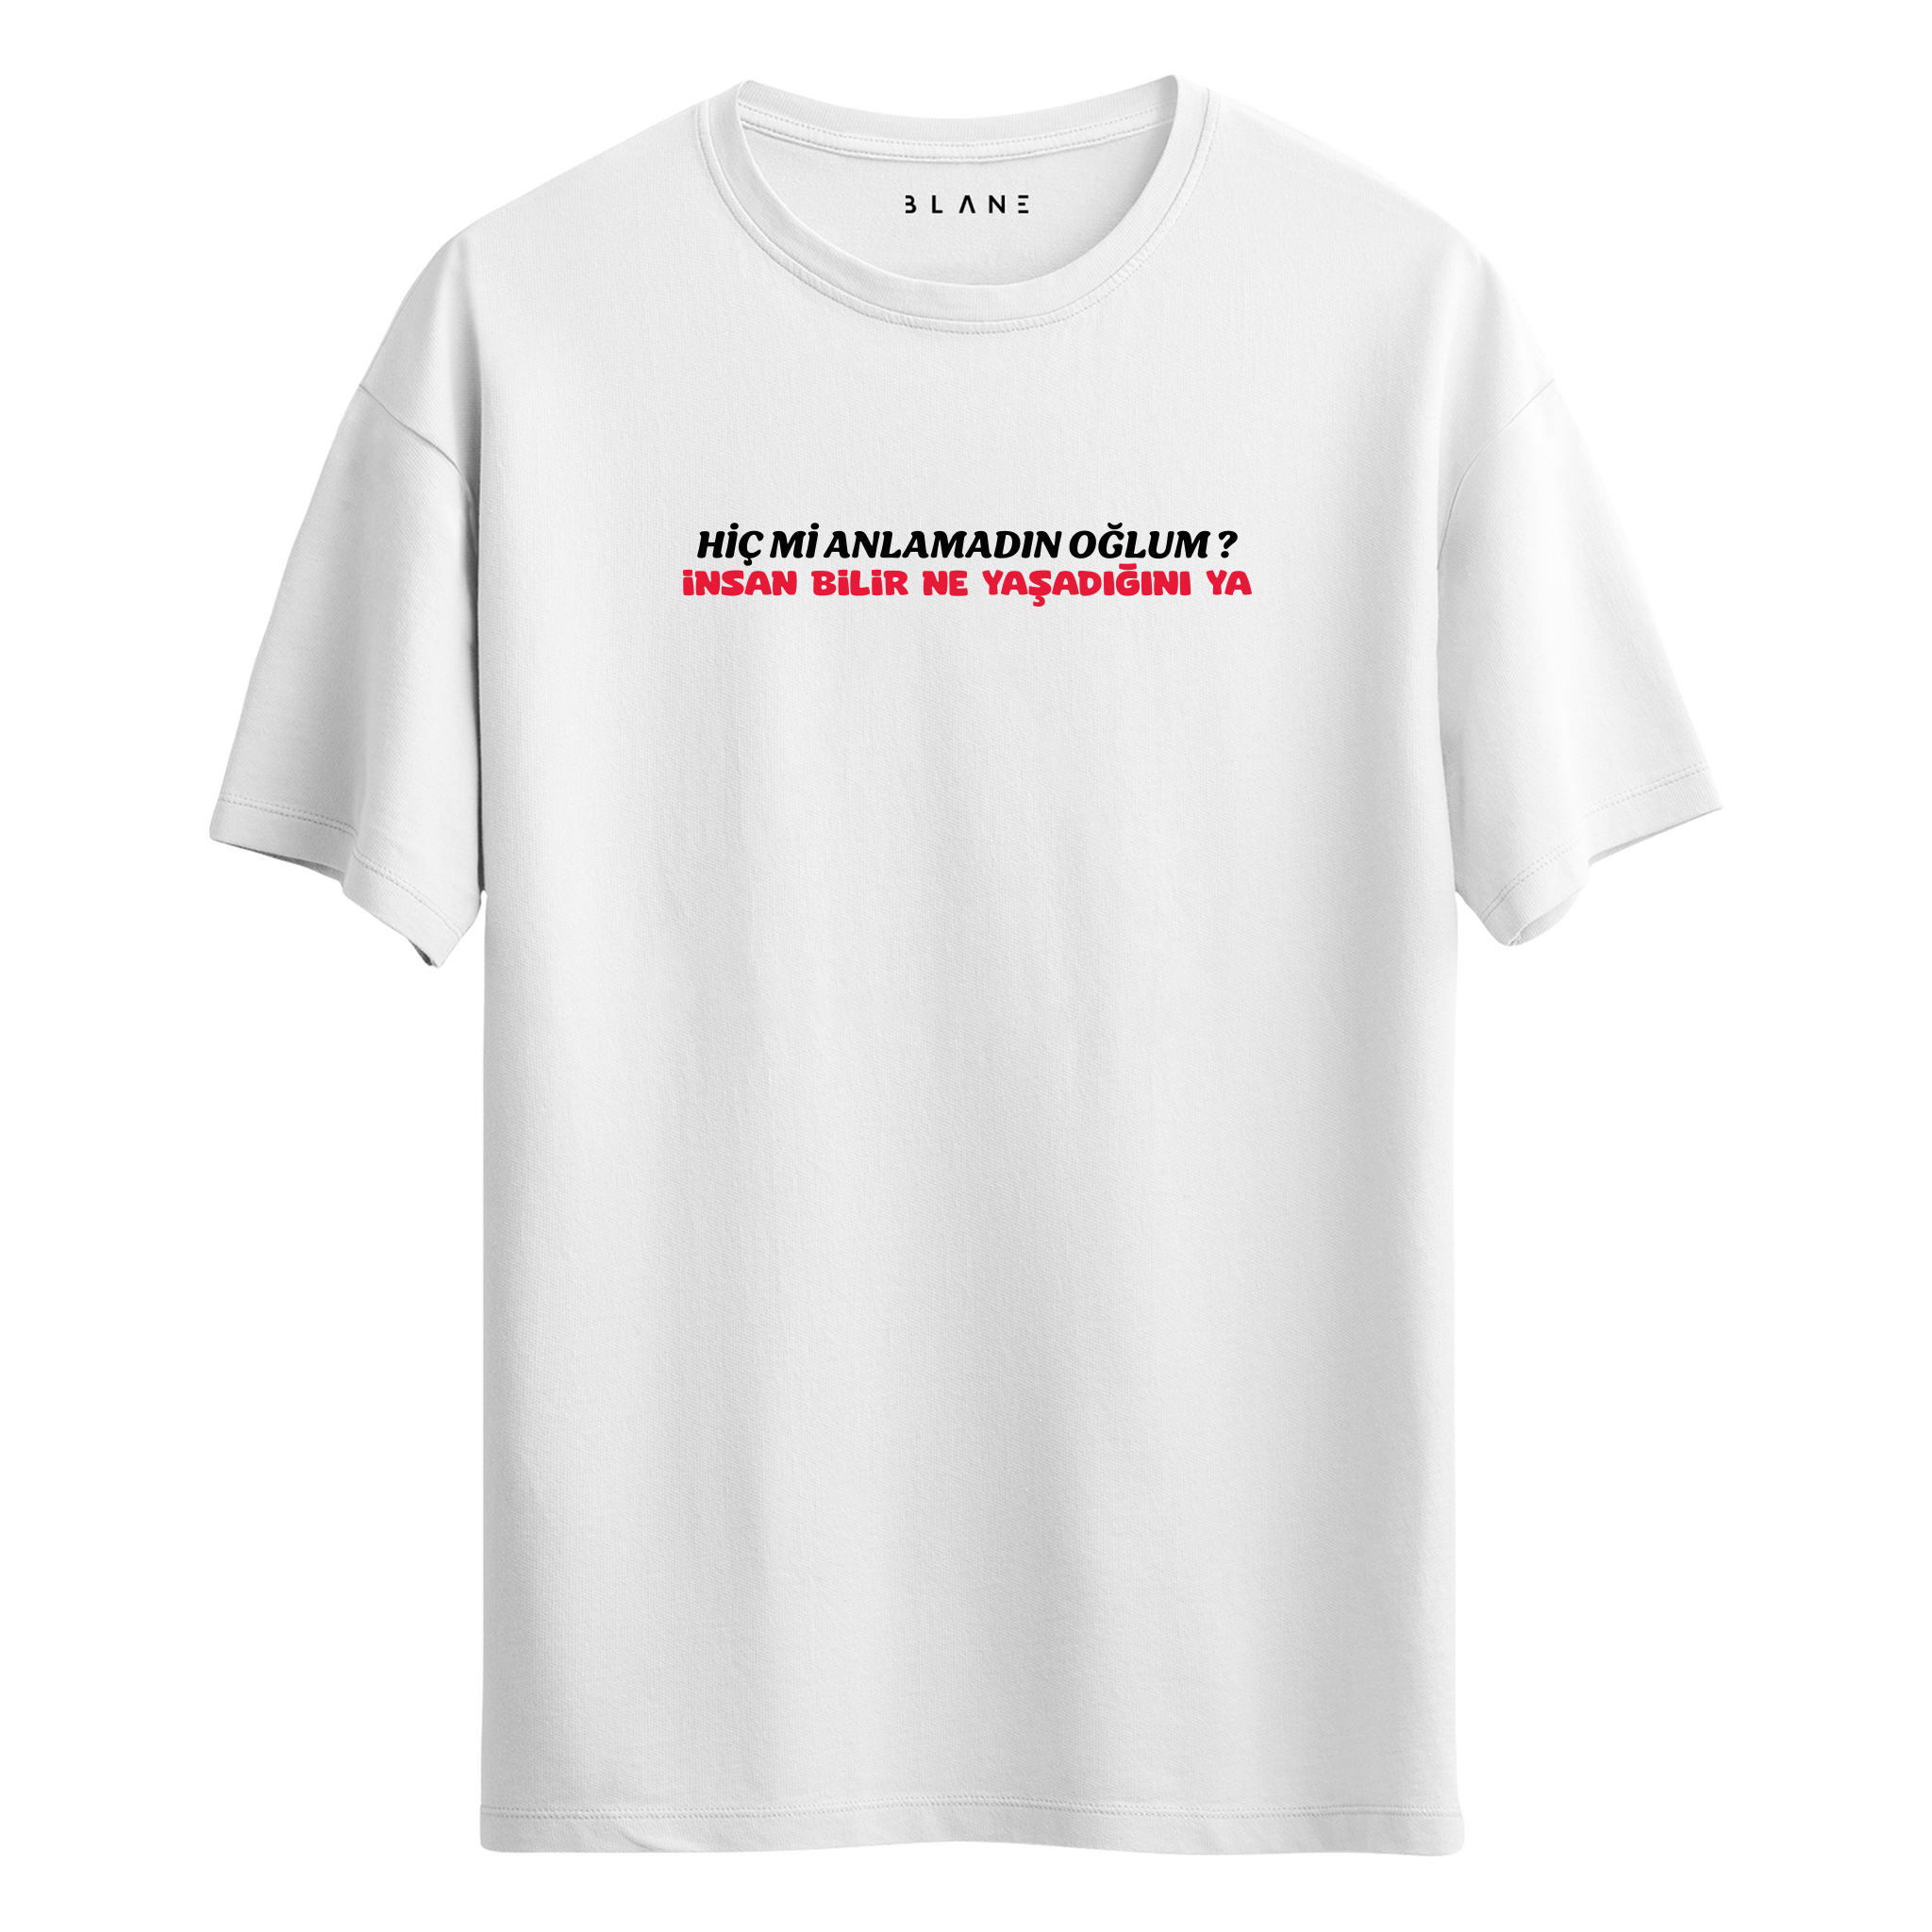 İnsan Bilir Ne Yaşadığını Ya - T-Shirt